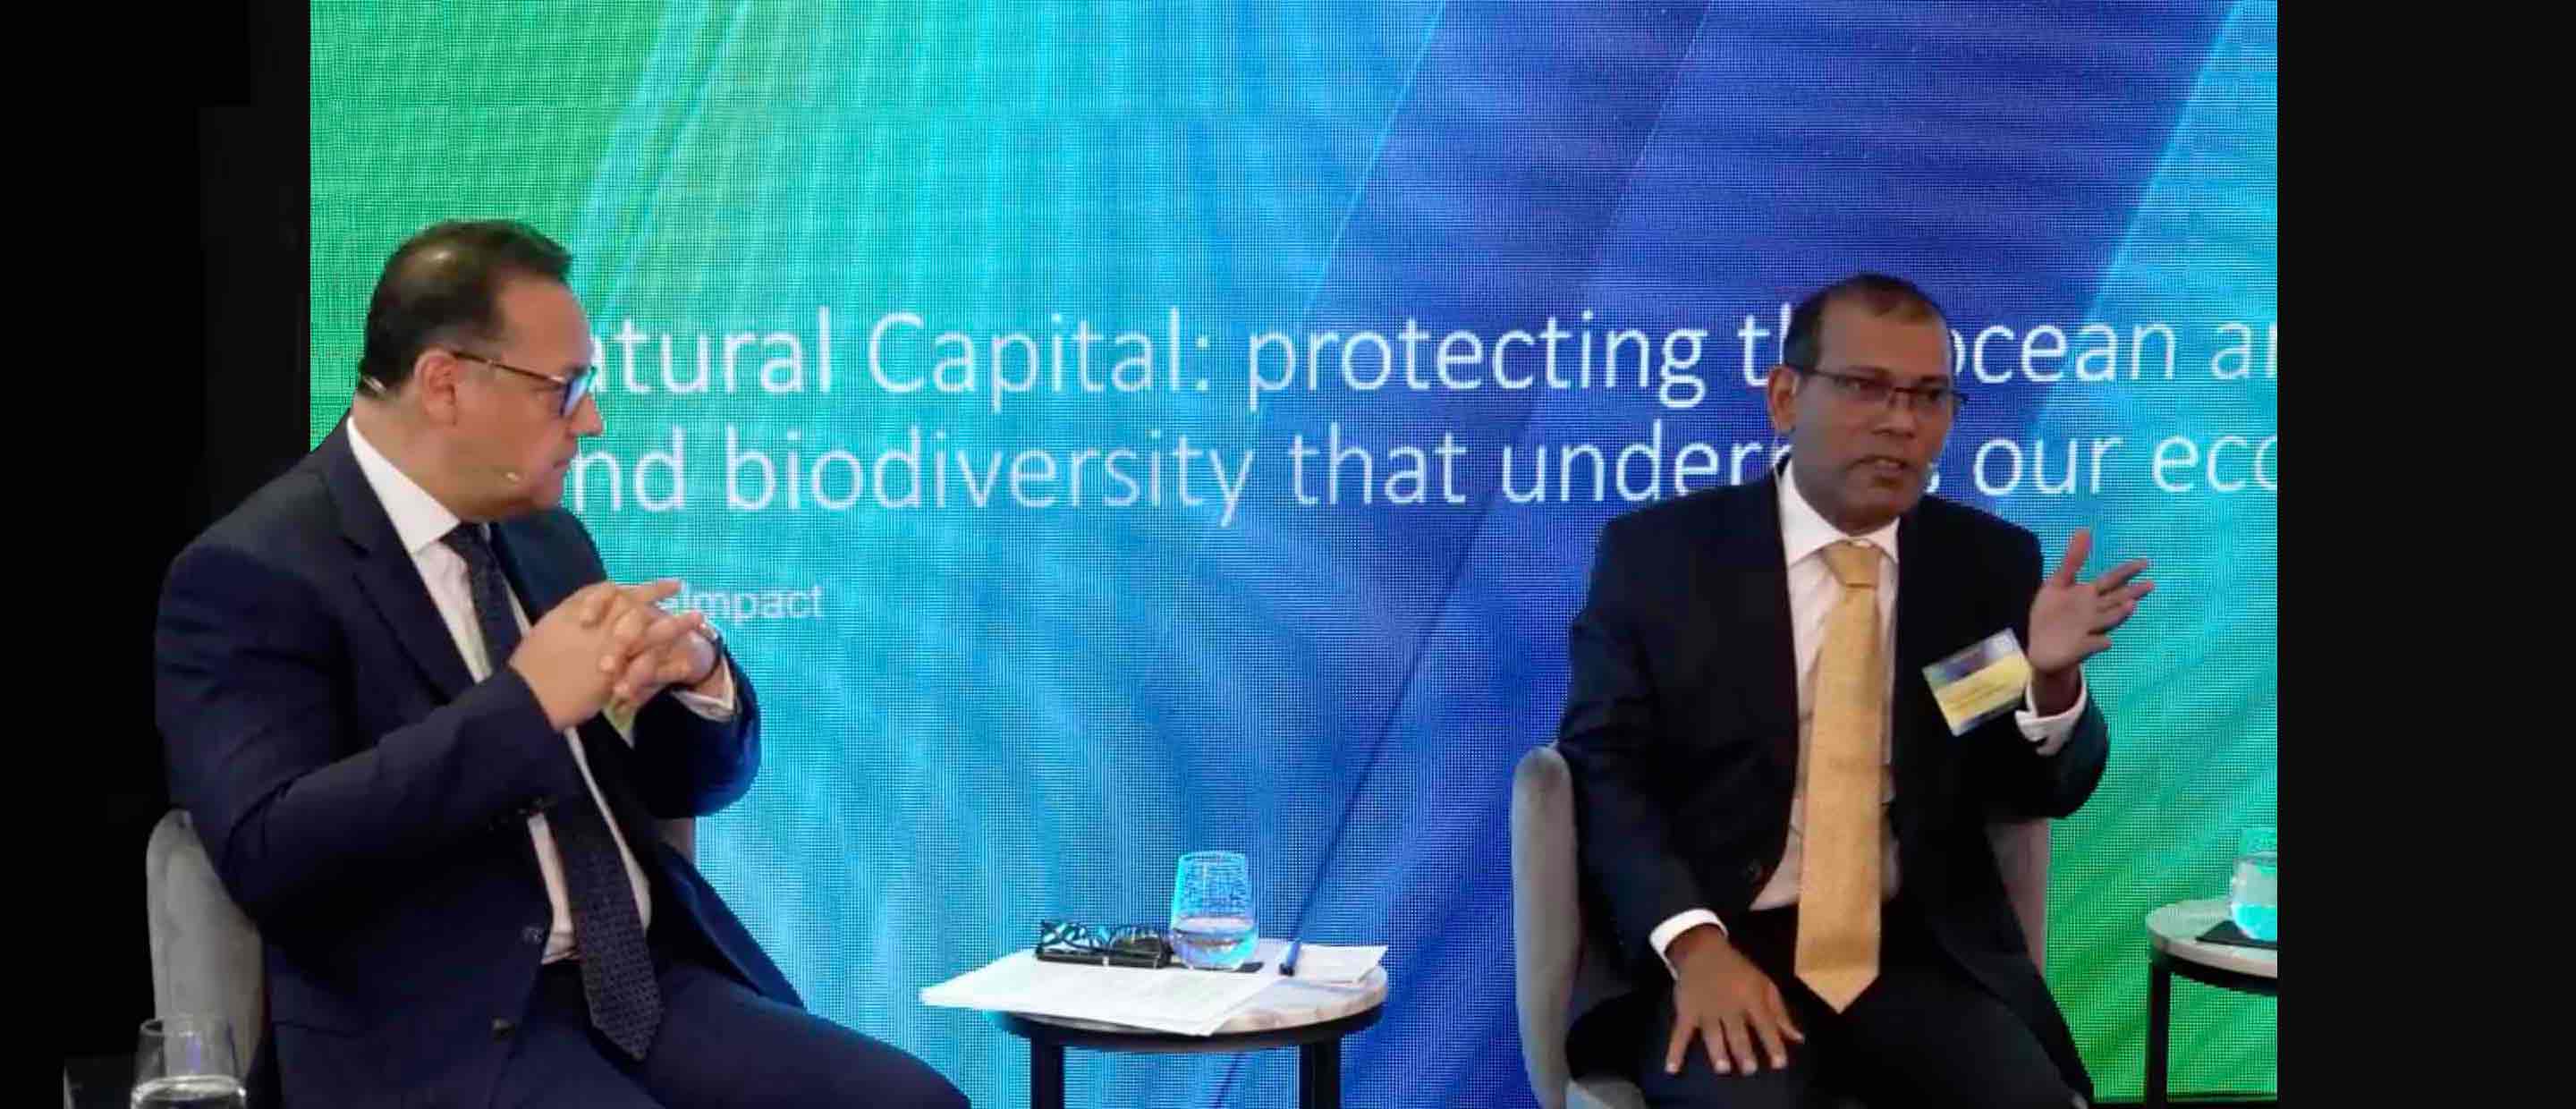 COP26-Natural-Capital.jpg